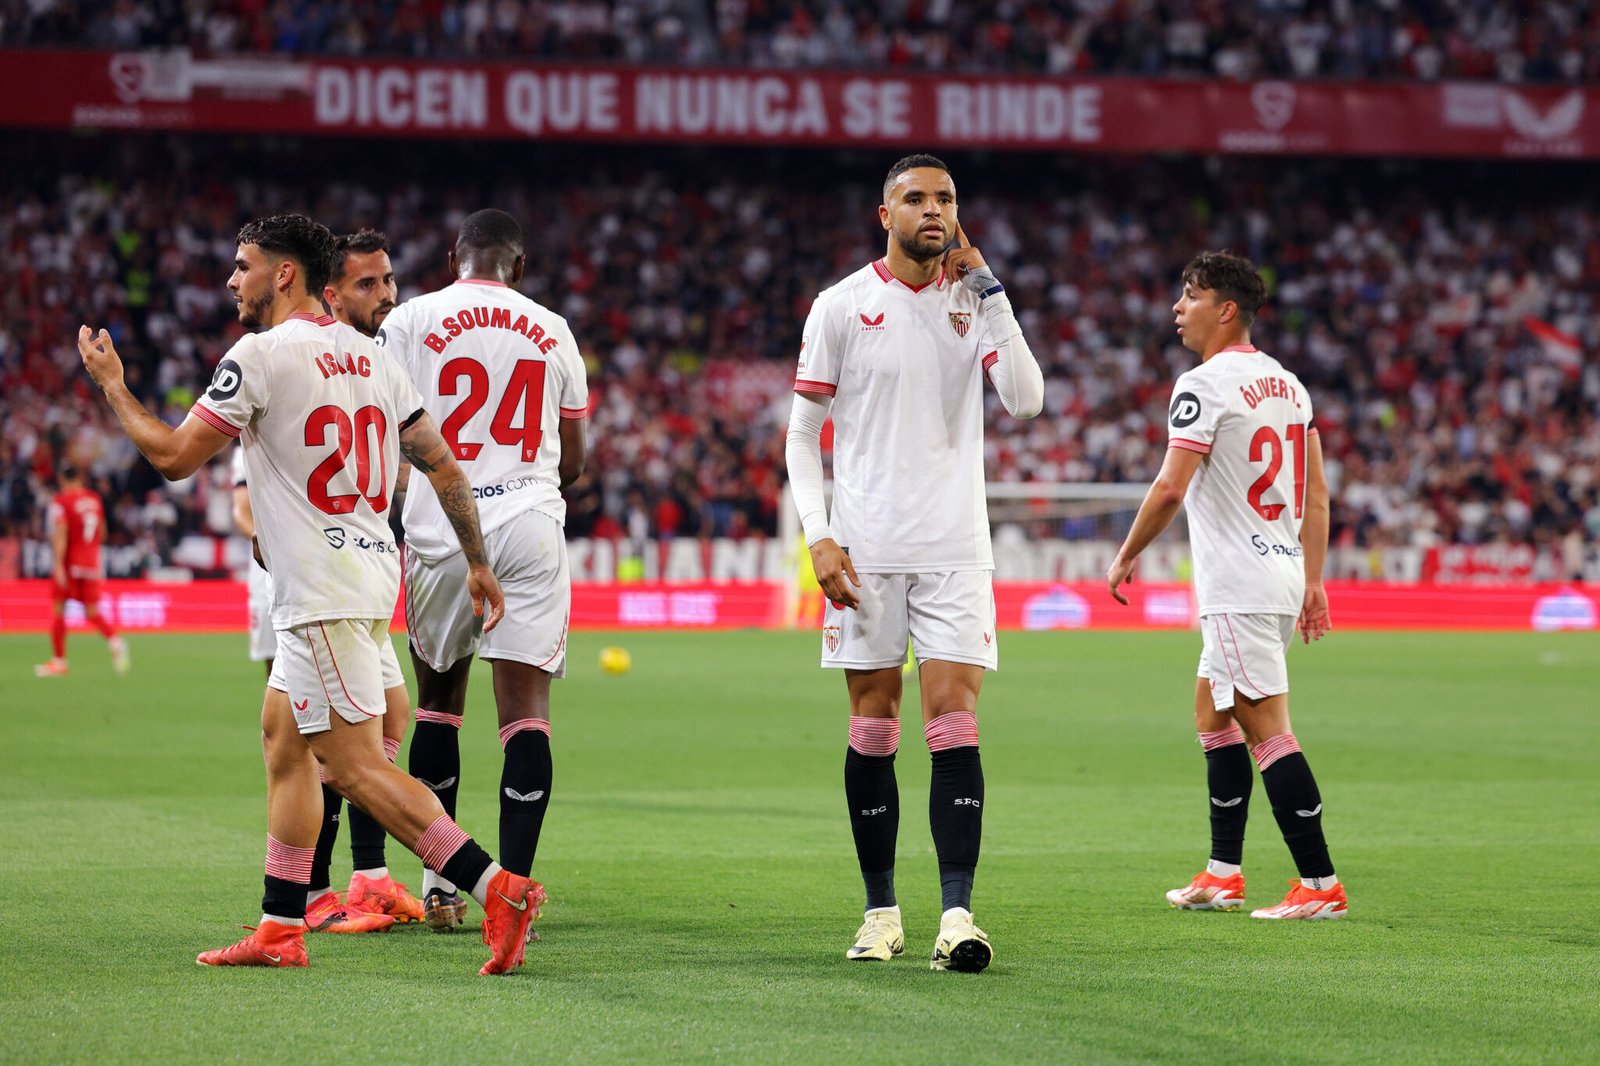 En Nesyri celebrando un gol con el Sevilla